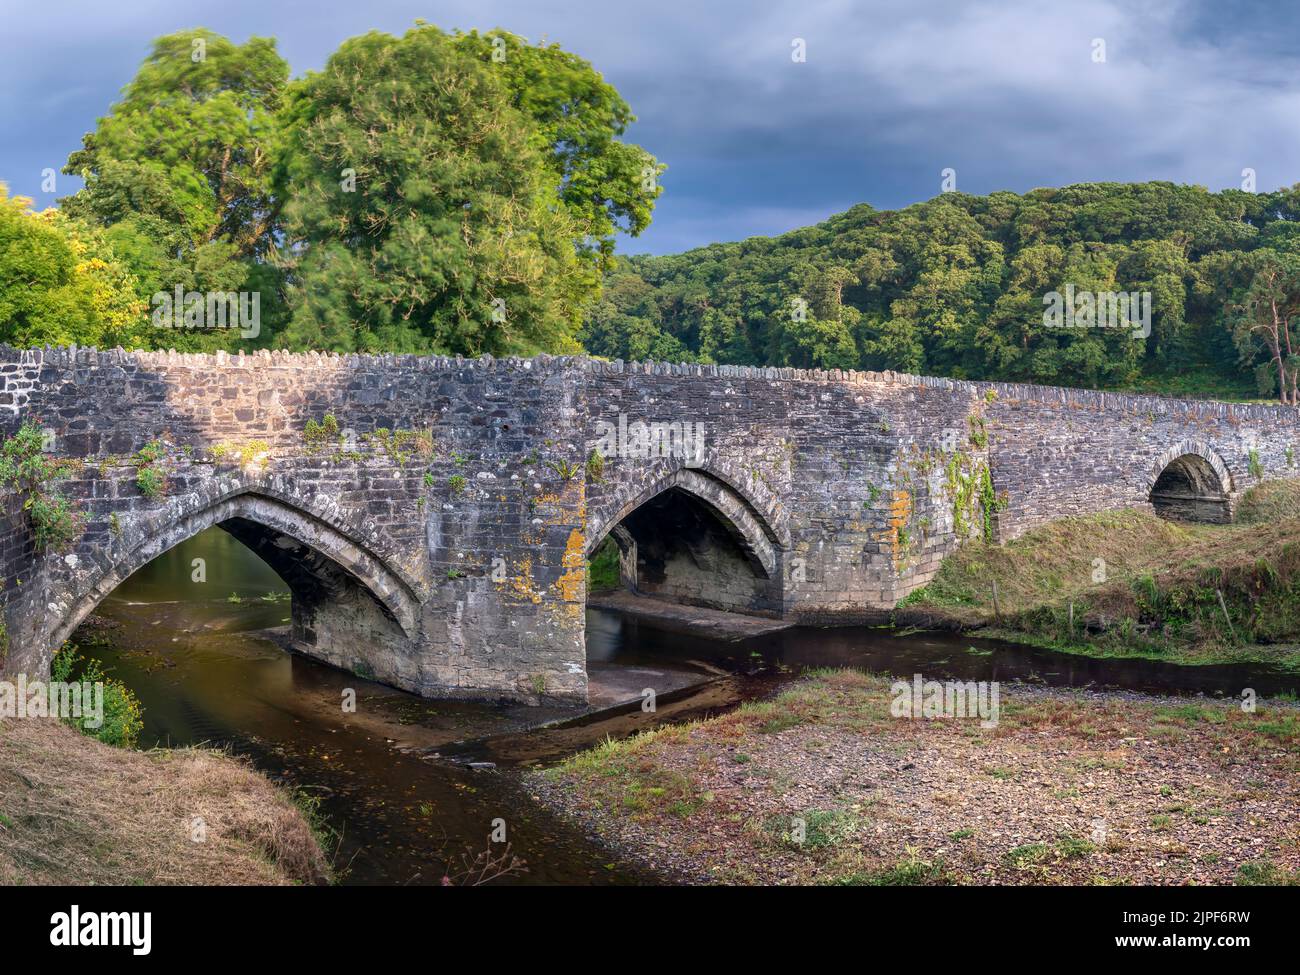 Yeolmbridge, Cornwall - die denkmalgeschützte Yeolm Bridge, die dem Dorf seinen Namen gibt, überspannt den Fluss Ottery. Das „geplante antike Denkmal“ w Stockfoto